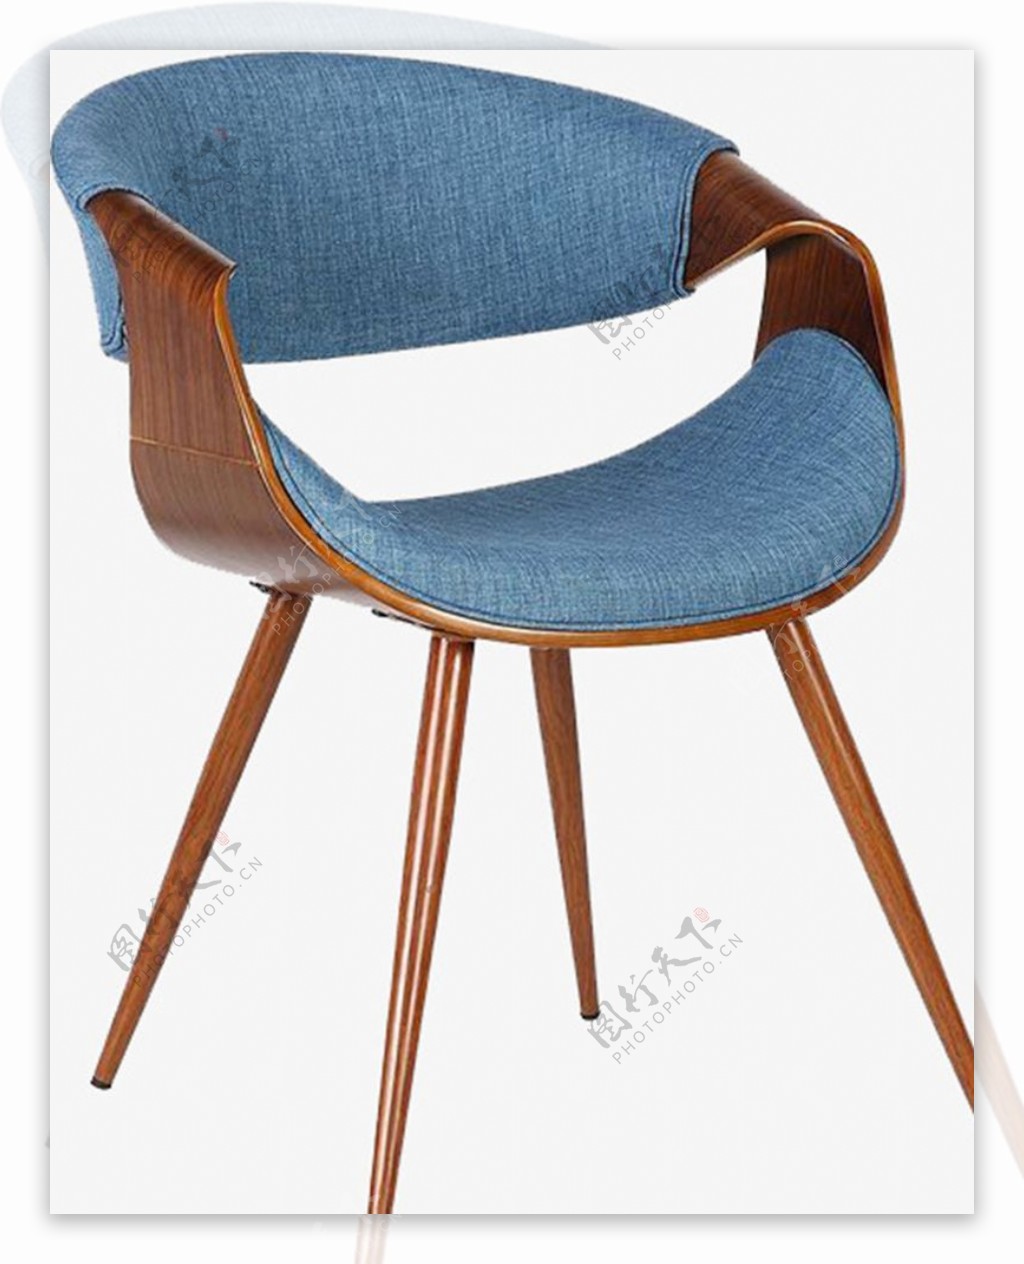 实物简约清新家具装饰椅子设计